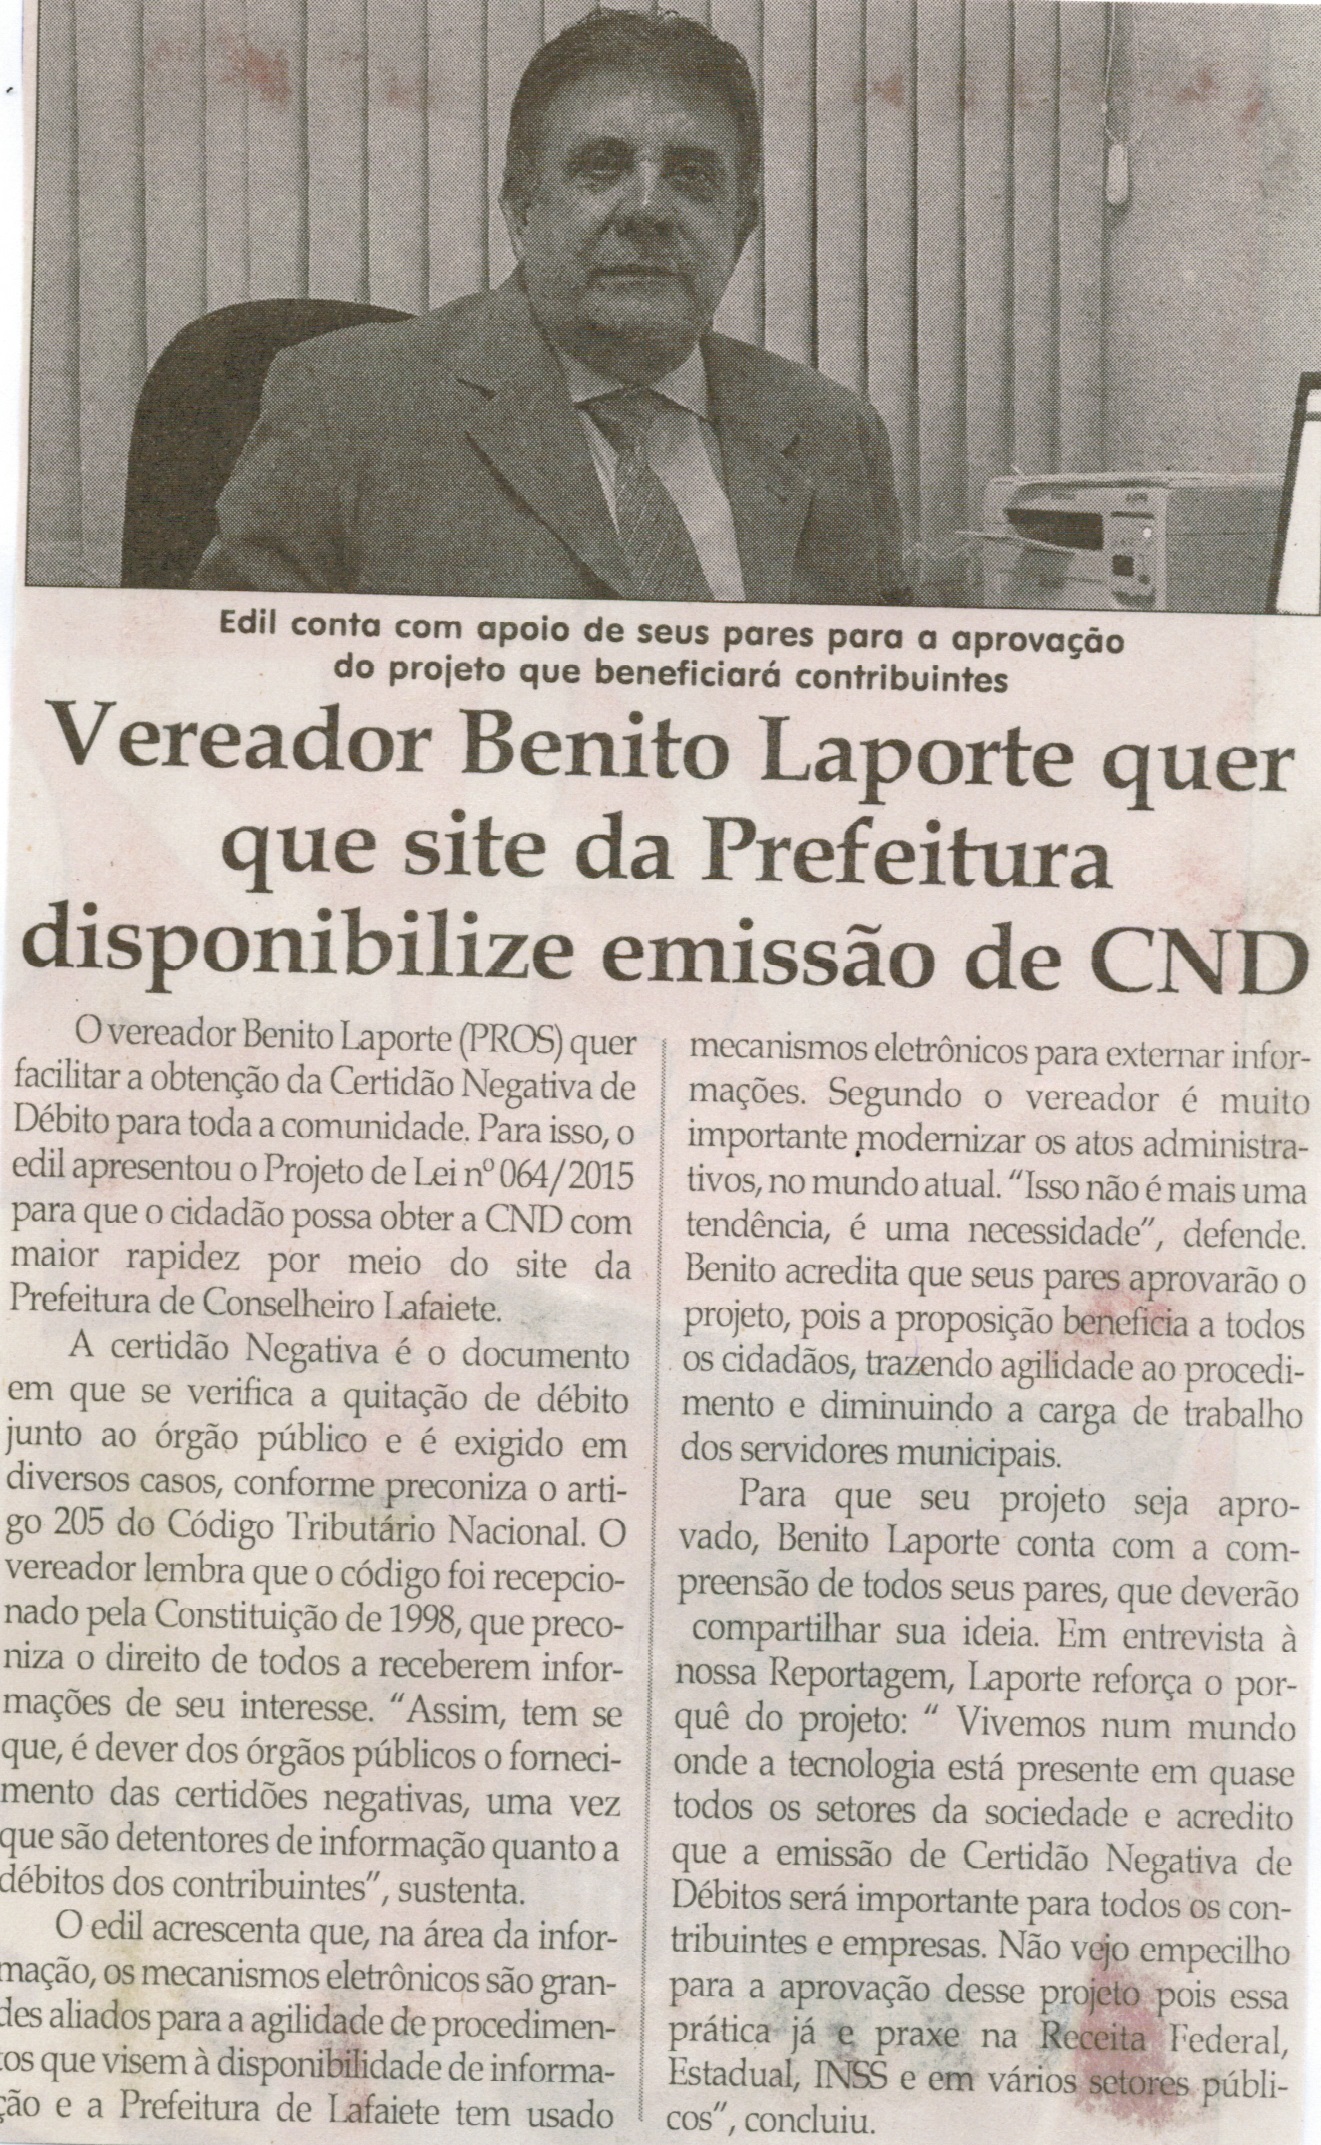 Vereador Benito Laporte quer que site da Prefeitura disponibilize emissão de CND. Jornal Correio da Cidade, Conselheiro Lafaiete, 17 jul. 2015, p. 6.